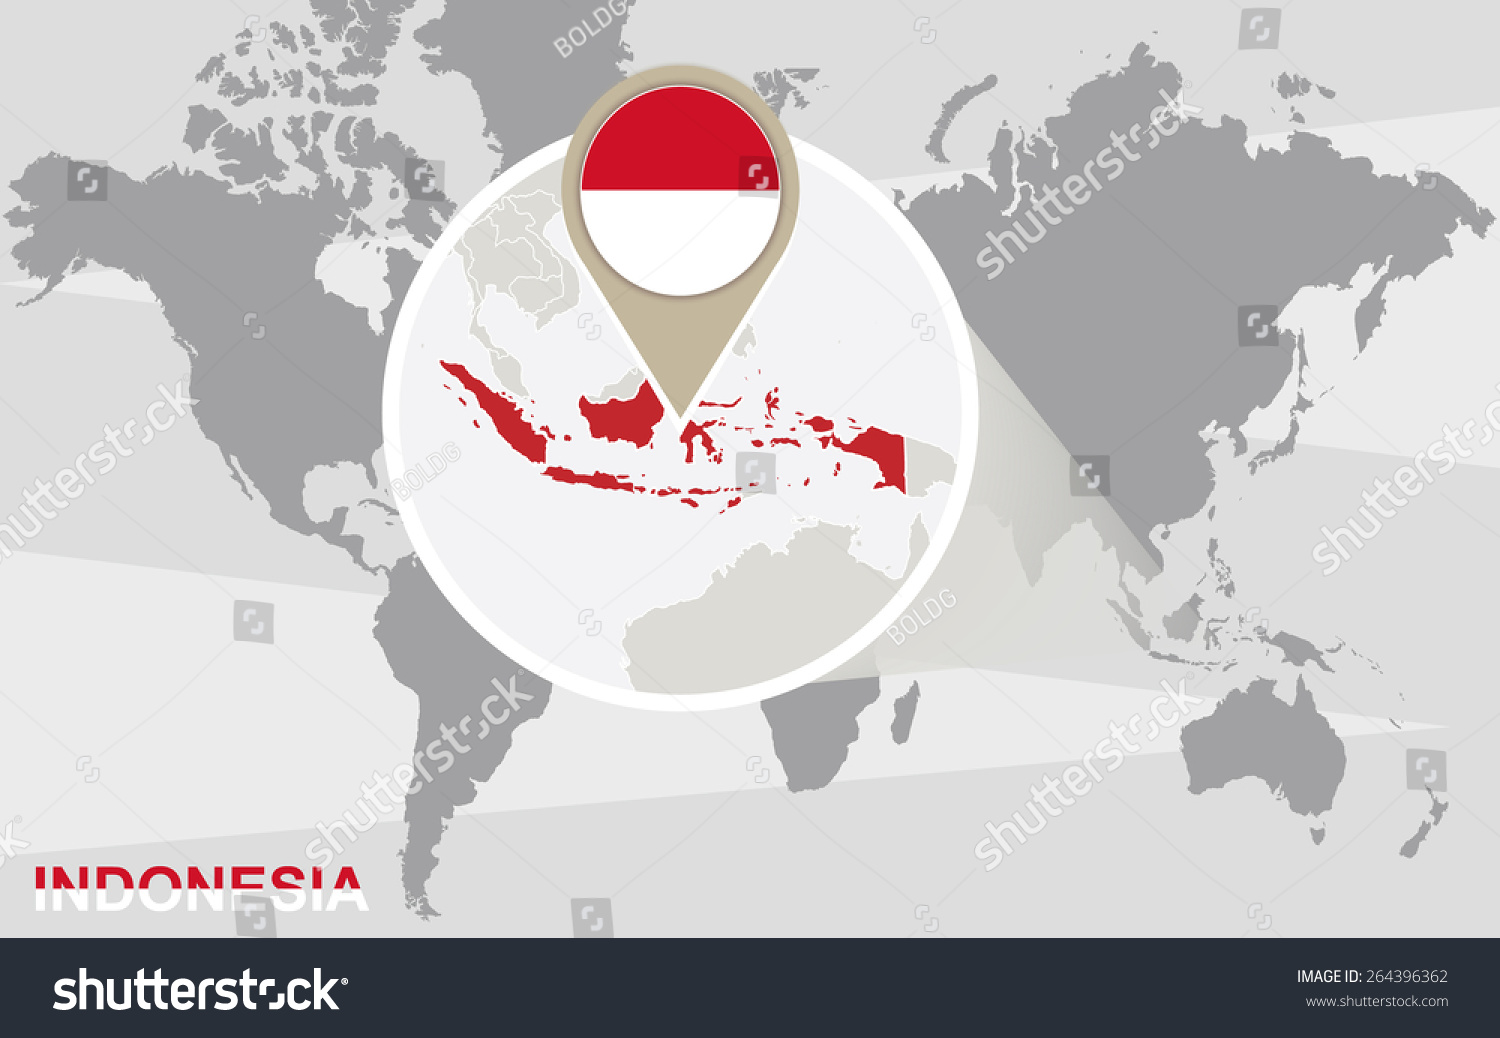 世界地图,放大了印尼。印尼国旗和地图。 - 背